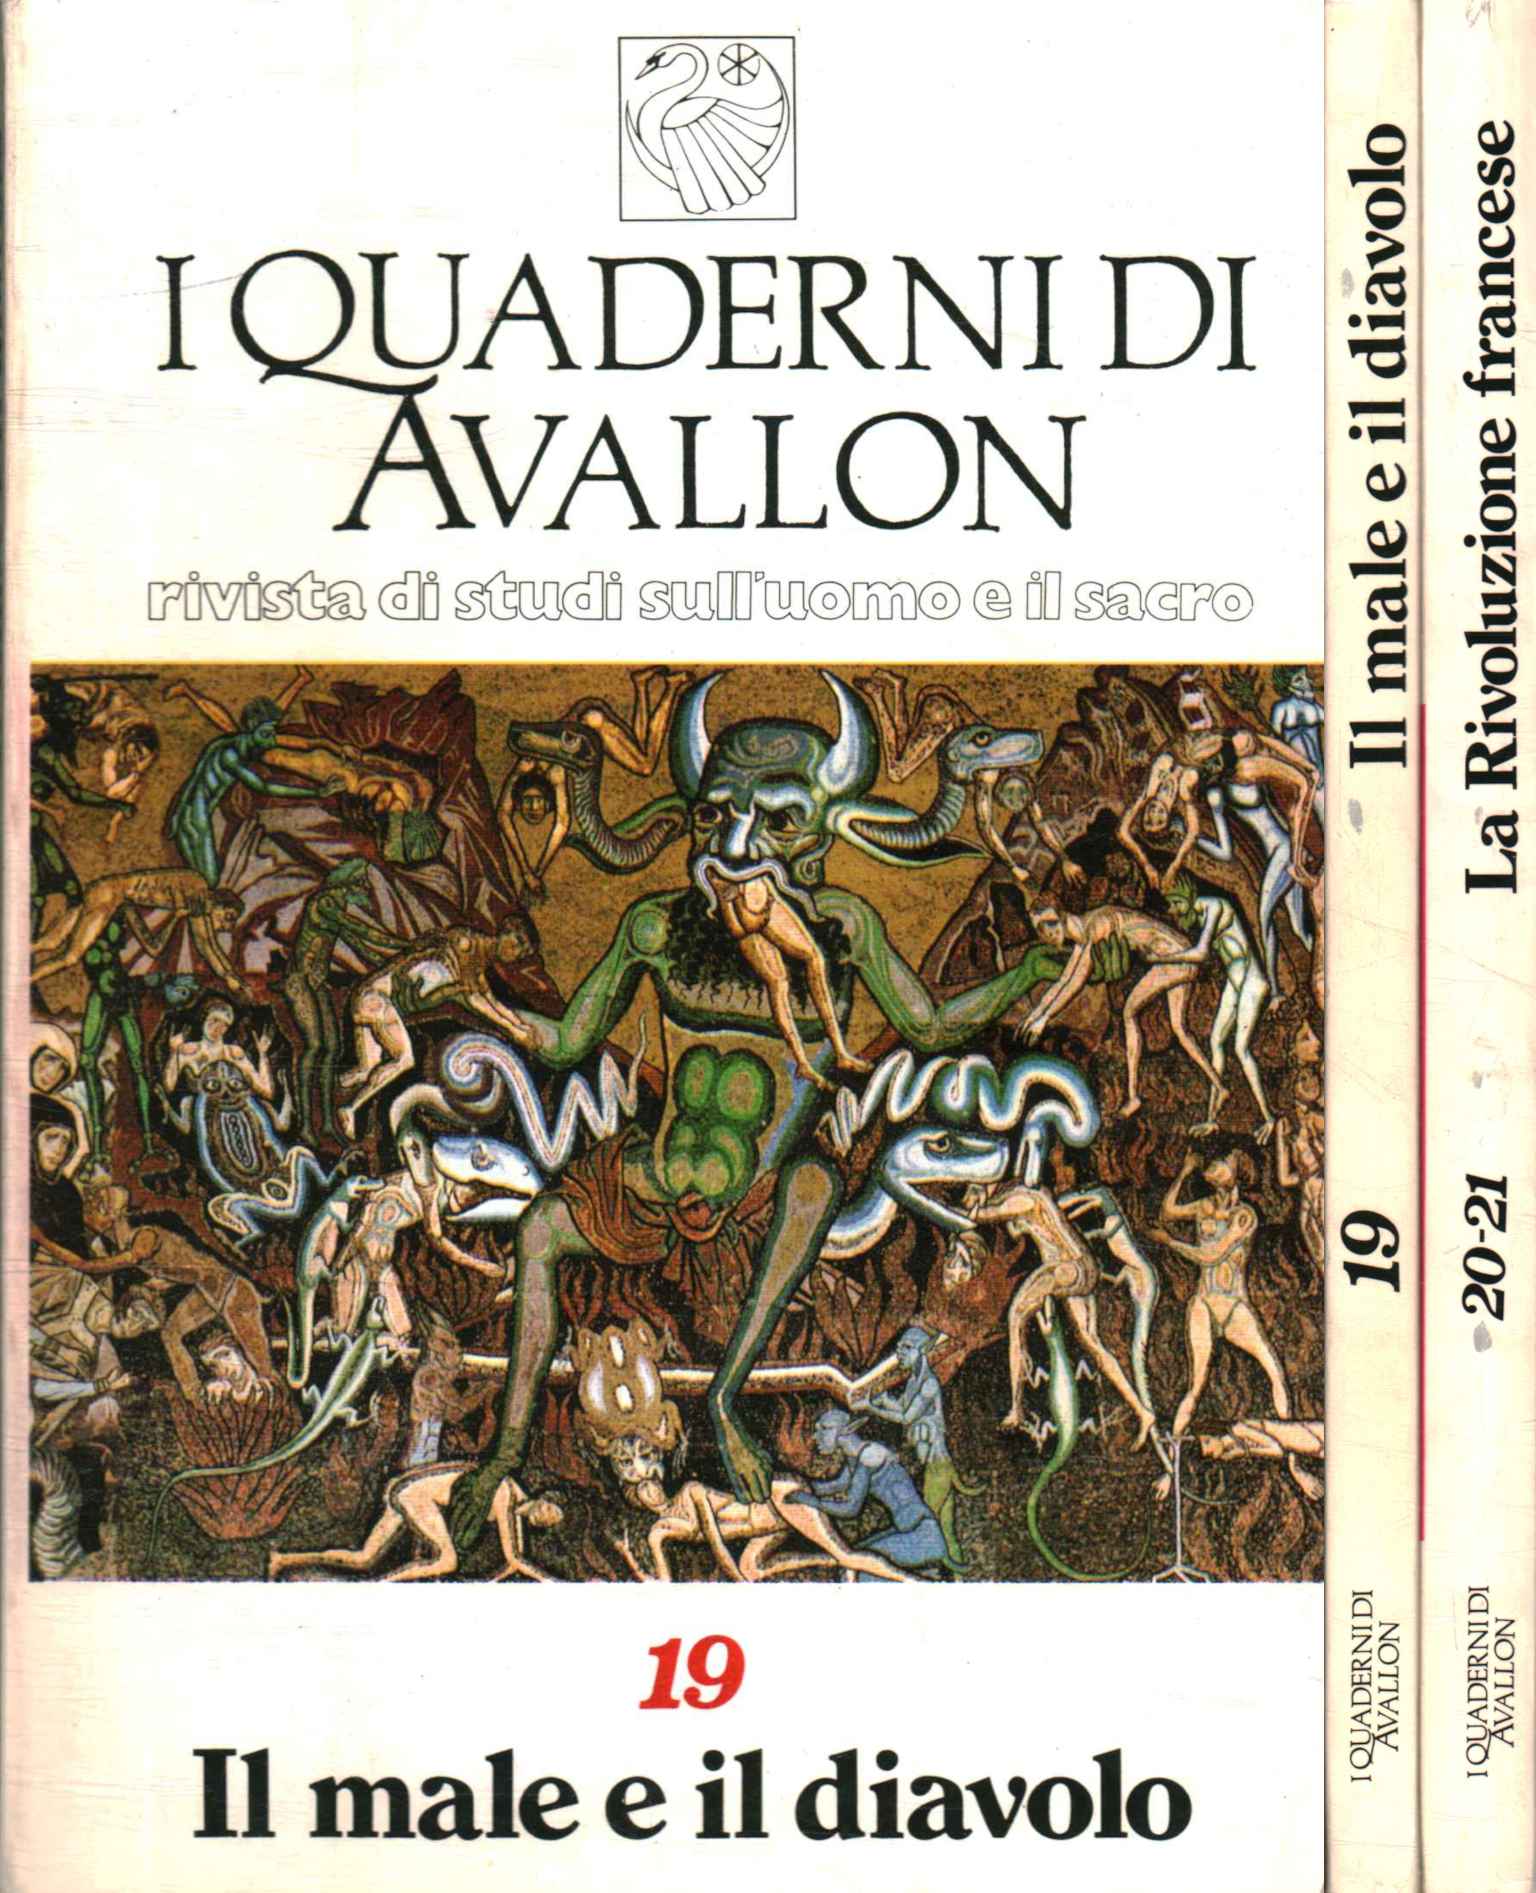 I Quaderni di Avallon. Rivista di stud